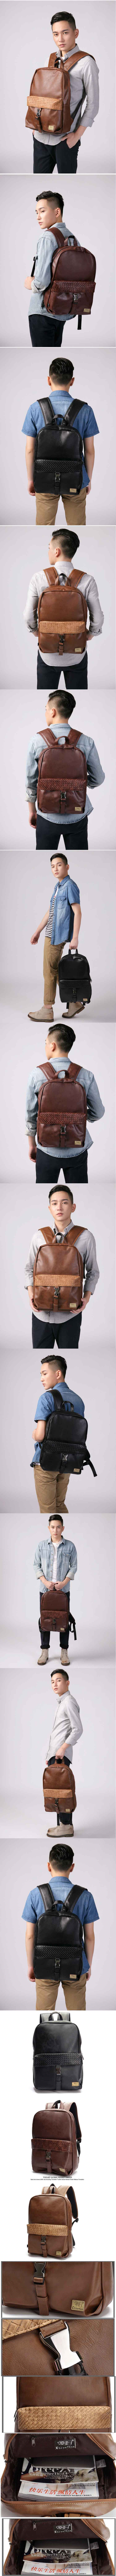 jual tas ransel pria keren dari bahan kulit import dengan dilengkapi slot laptop , tas ransel keren ini hanya ada di pfp store